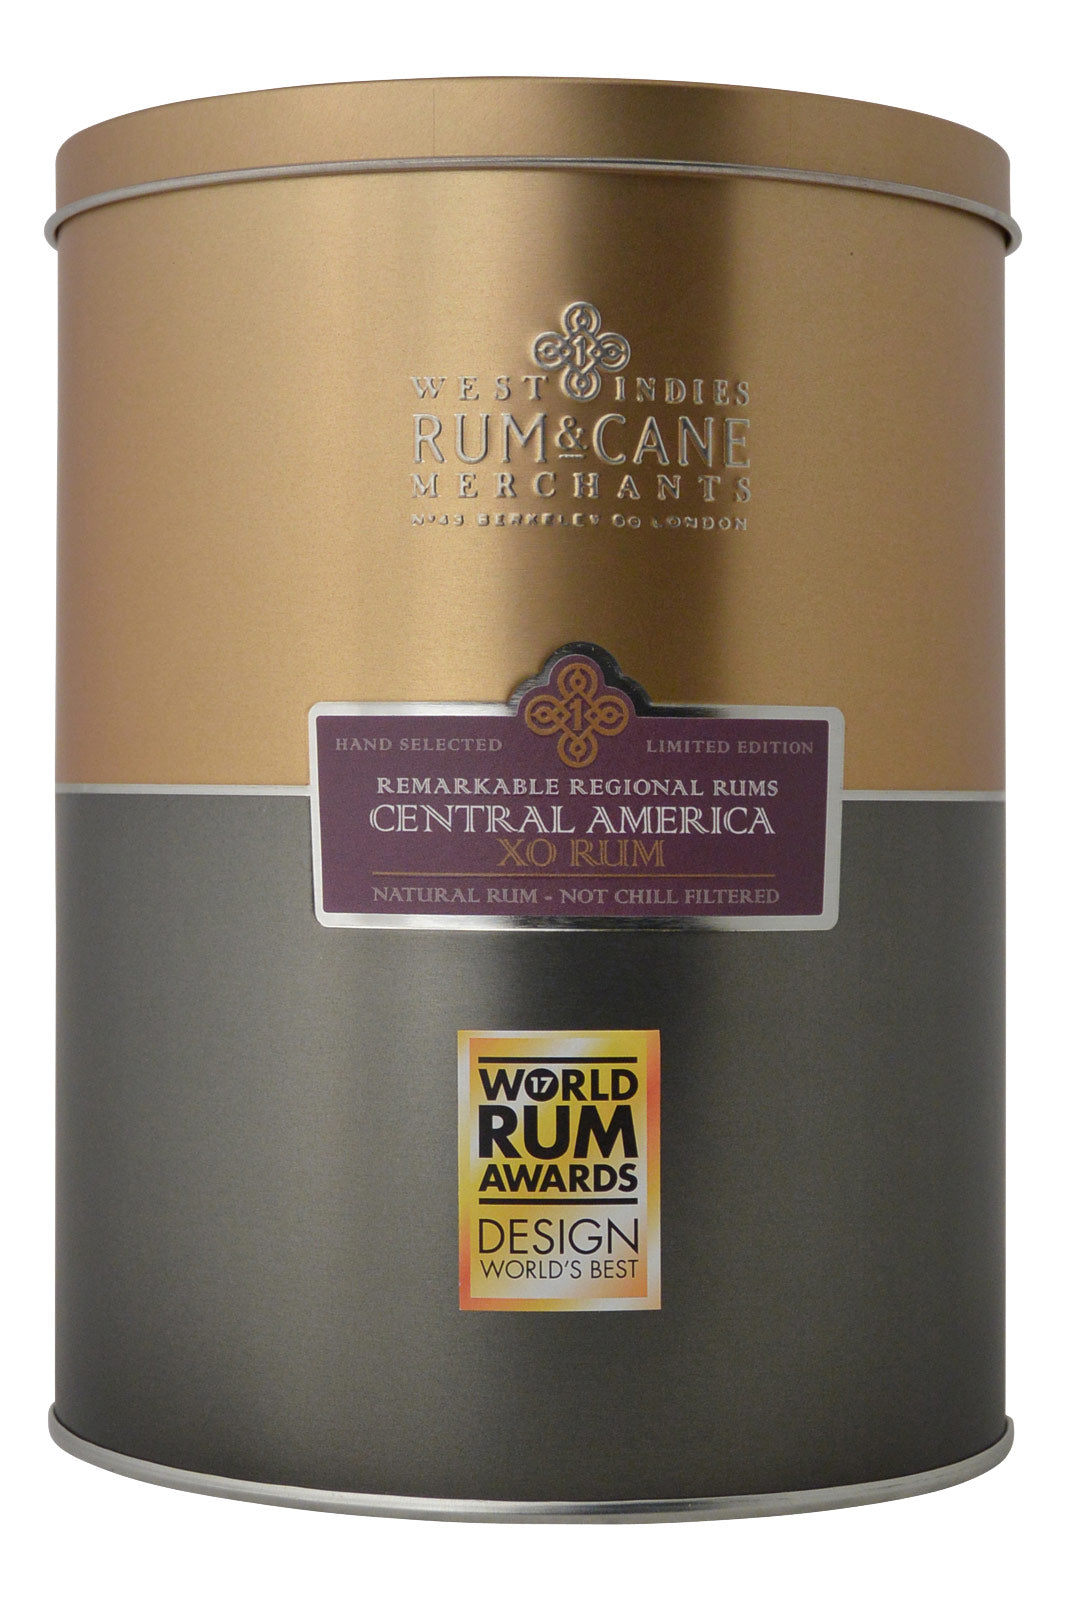 West Indies Rum & Cane Central America Rum XO